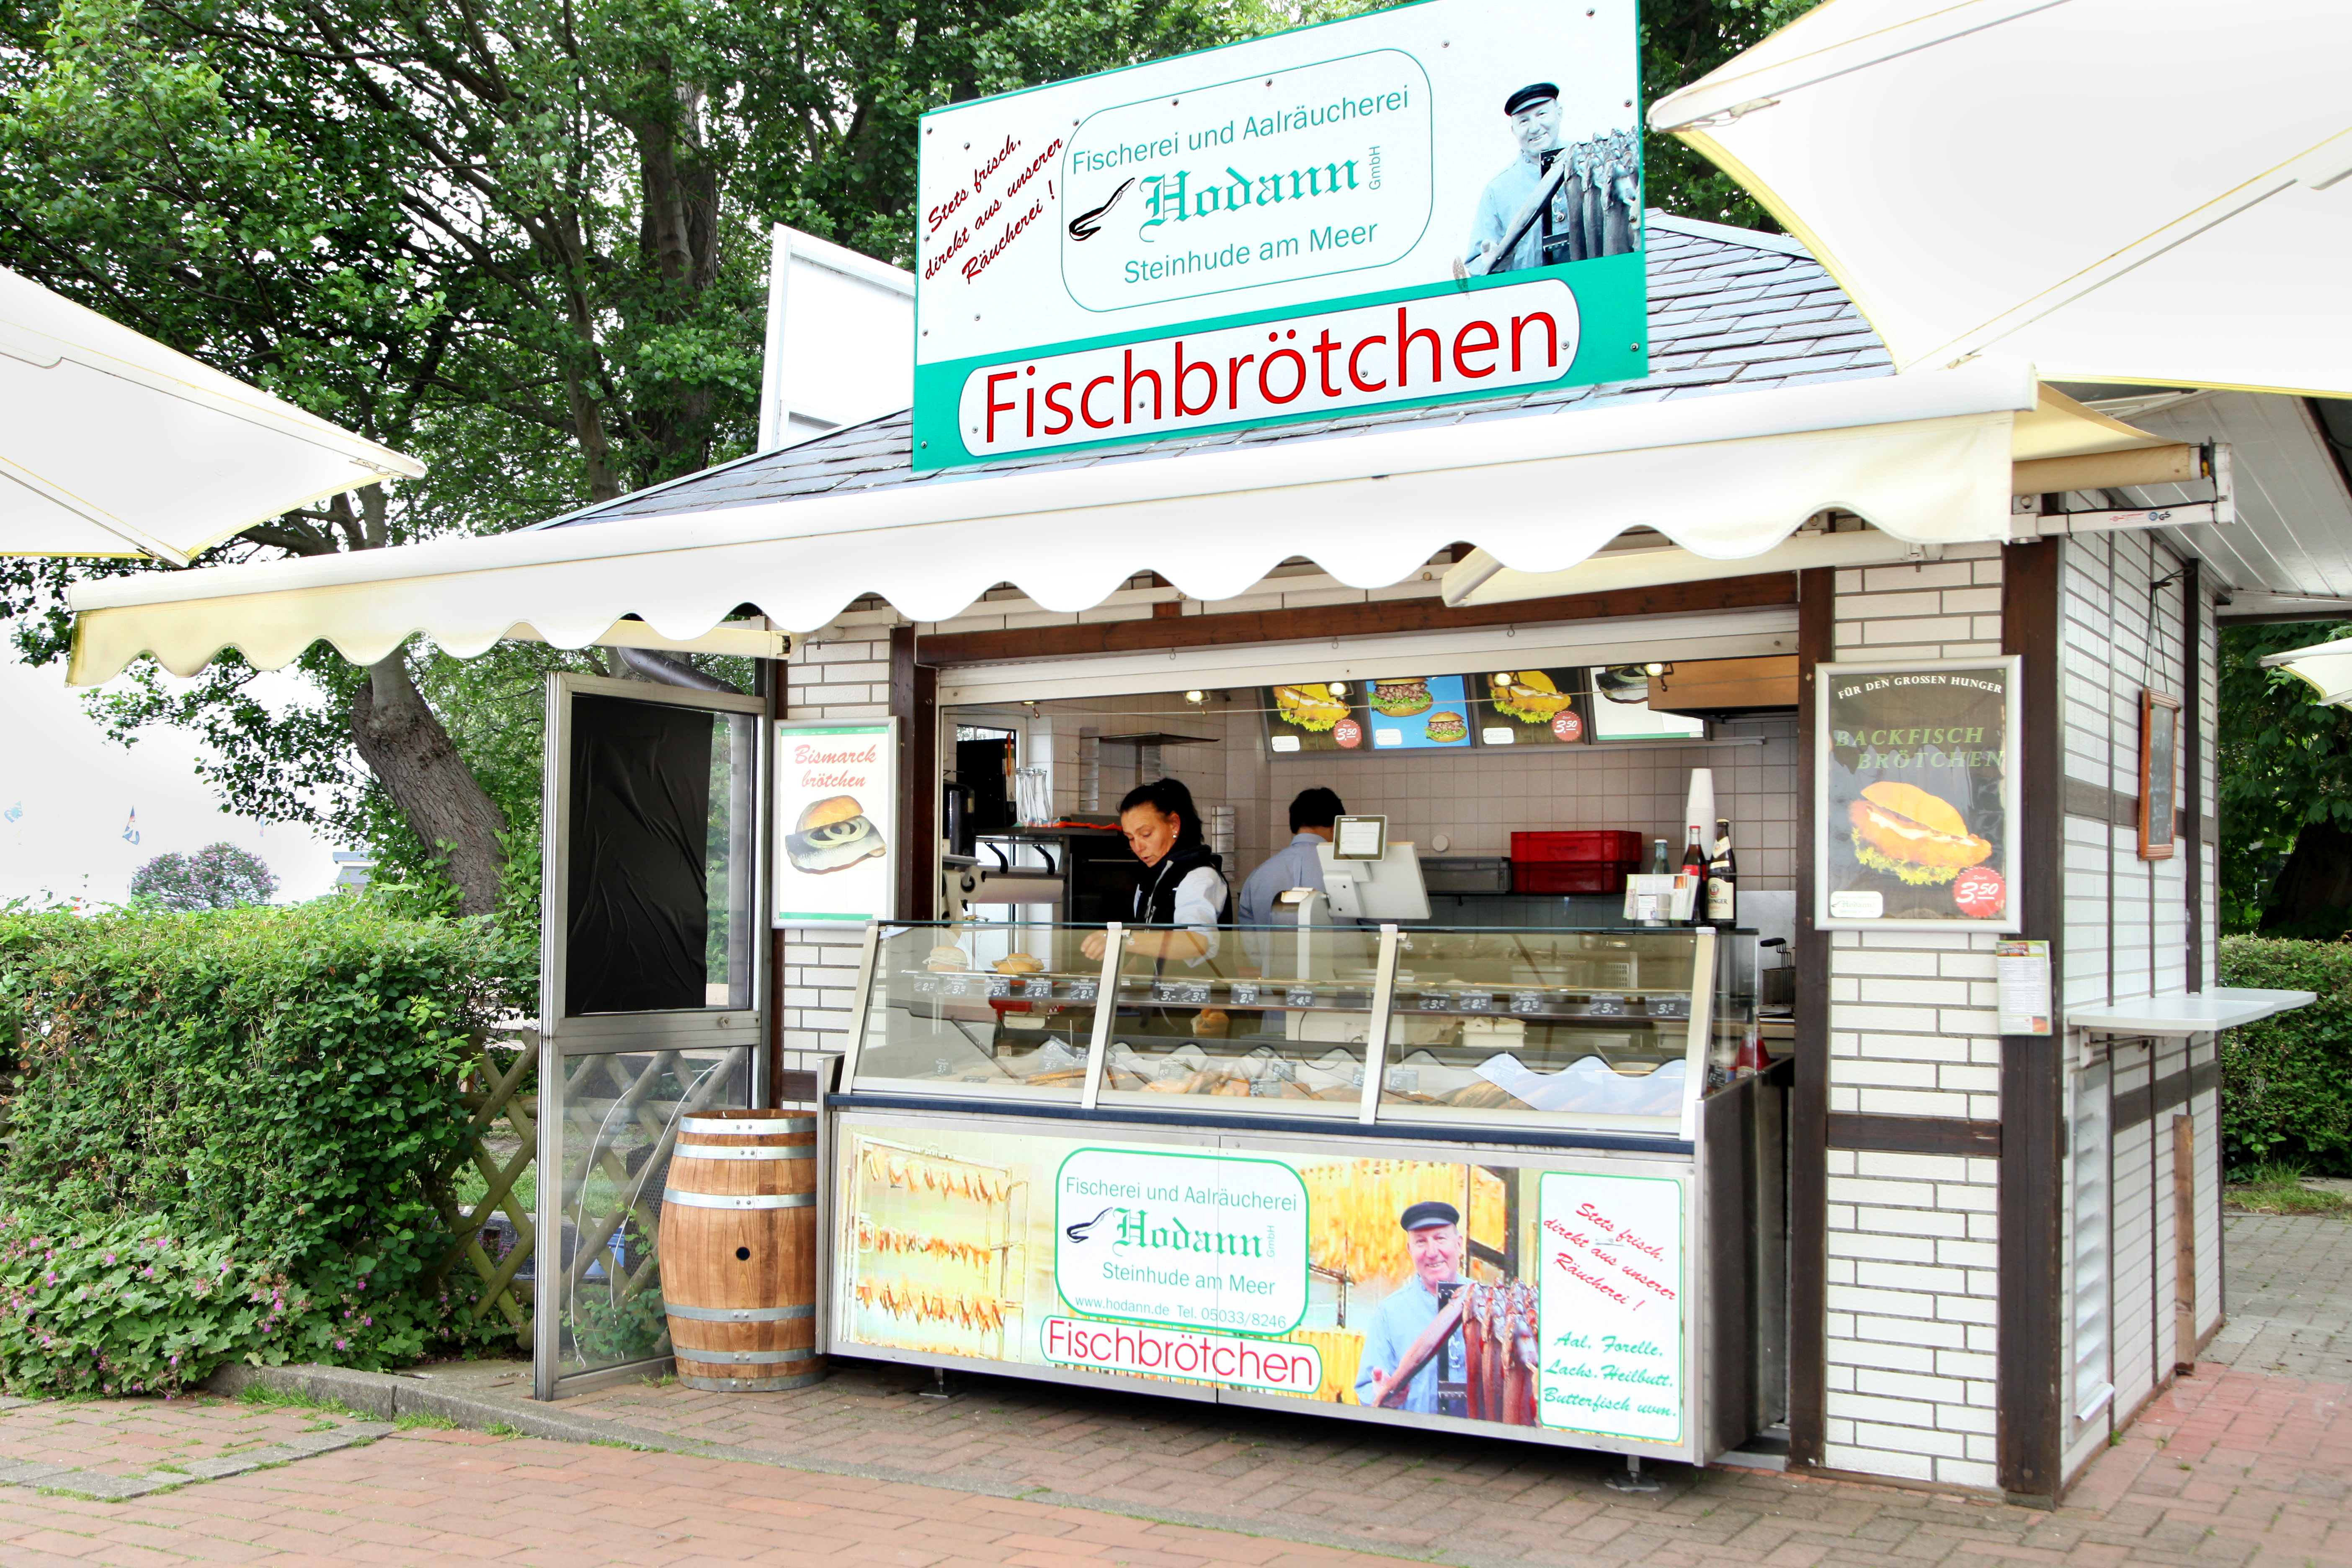 Fischerei & Aalräucherei Hodann GmbH